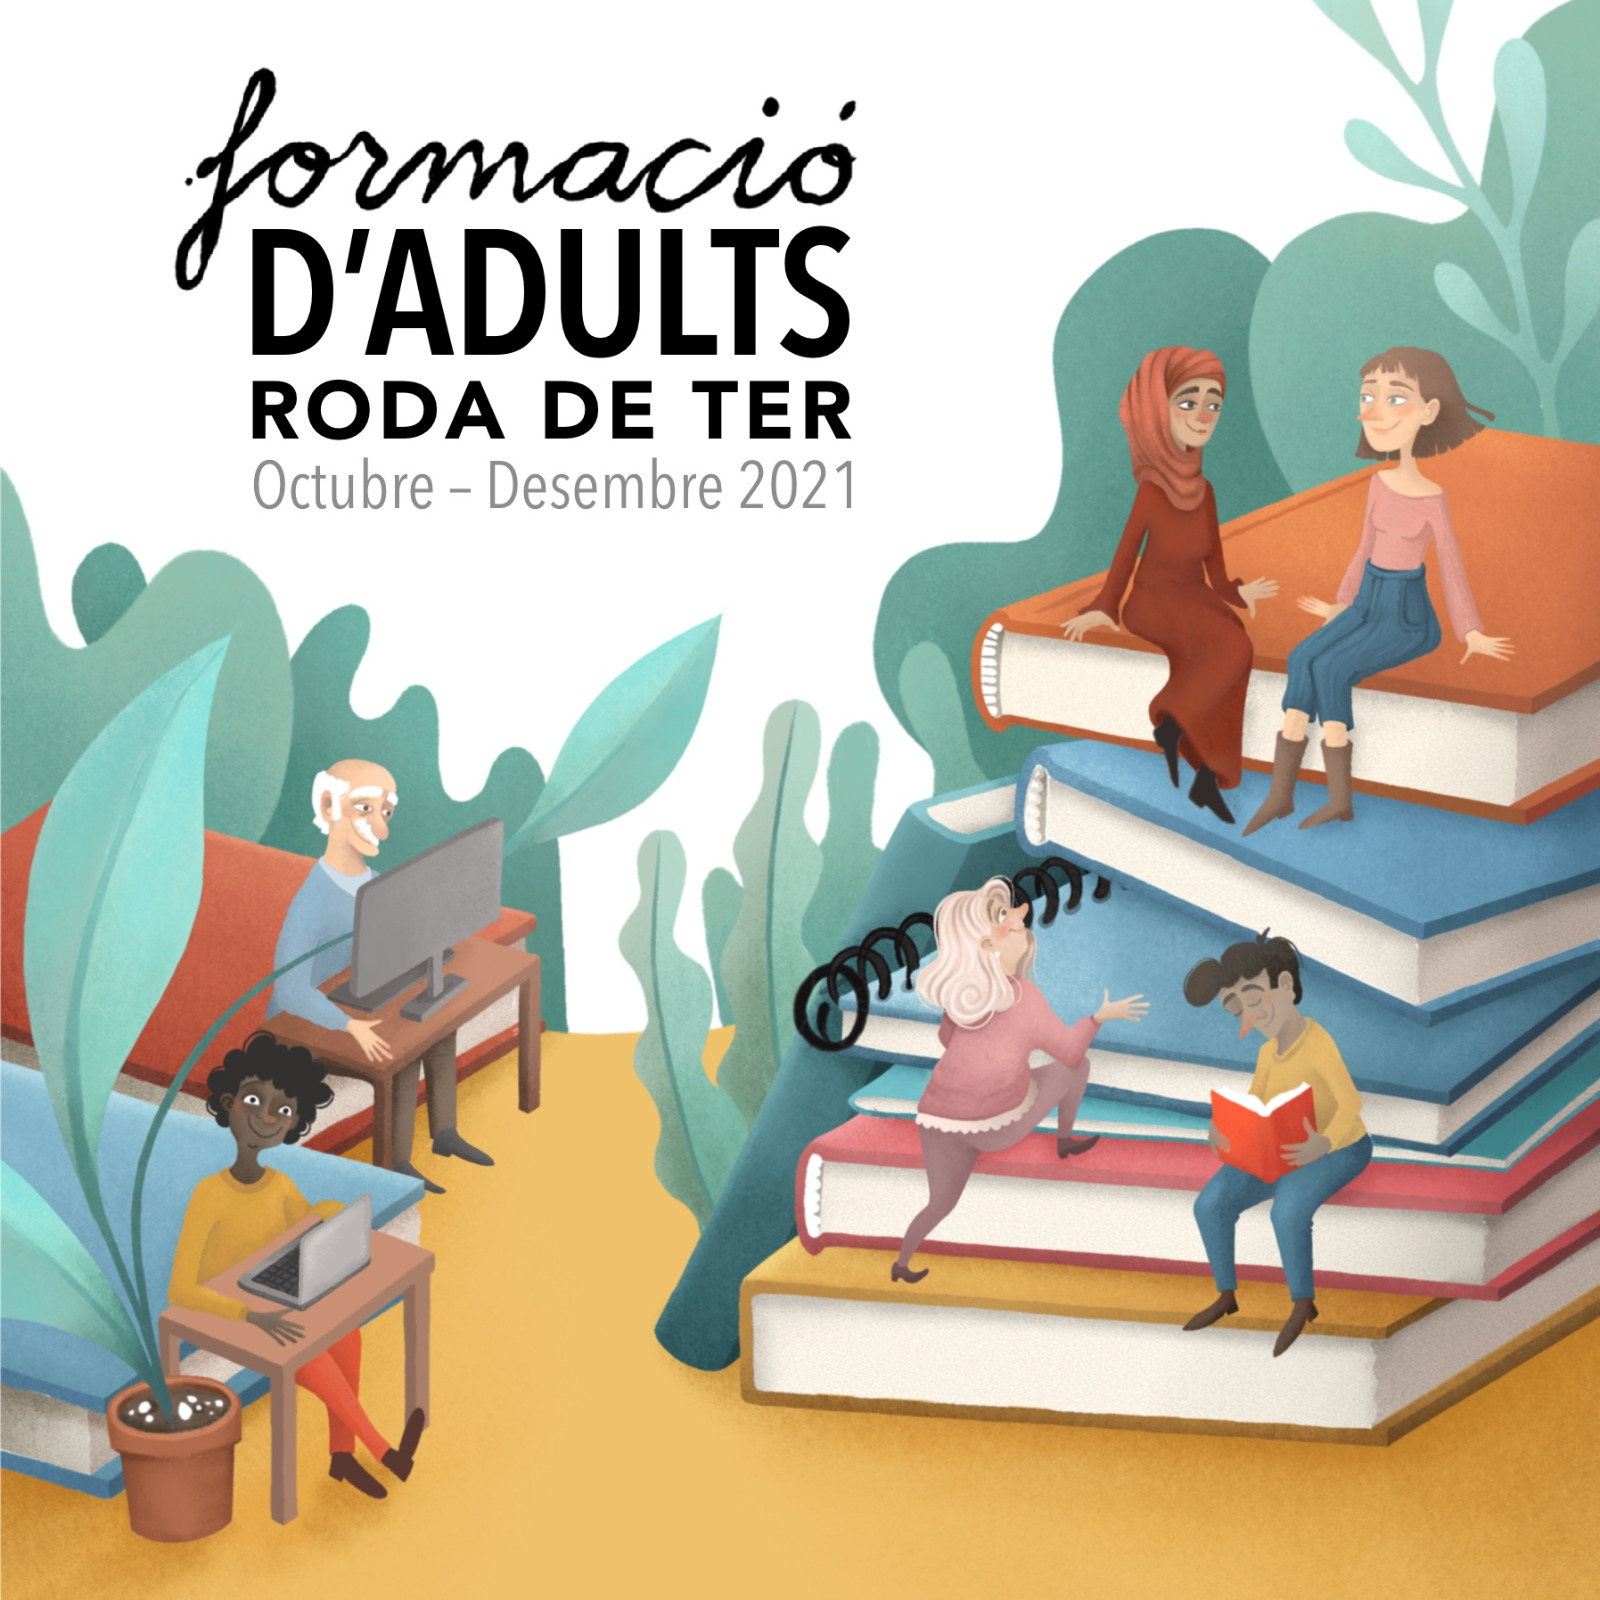 Formació d'adults a Roda de Ter: octubre-desembre 2021